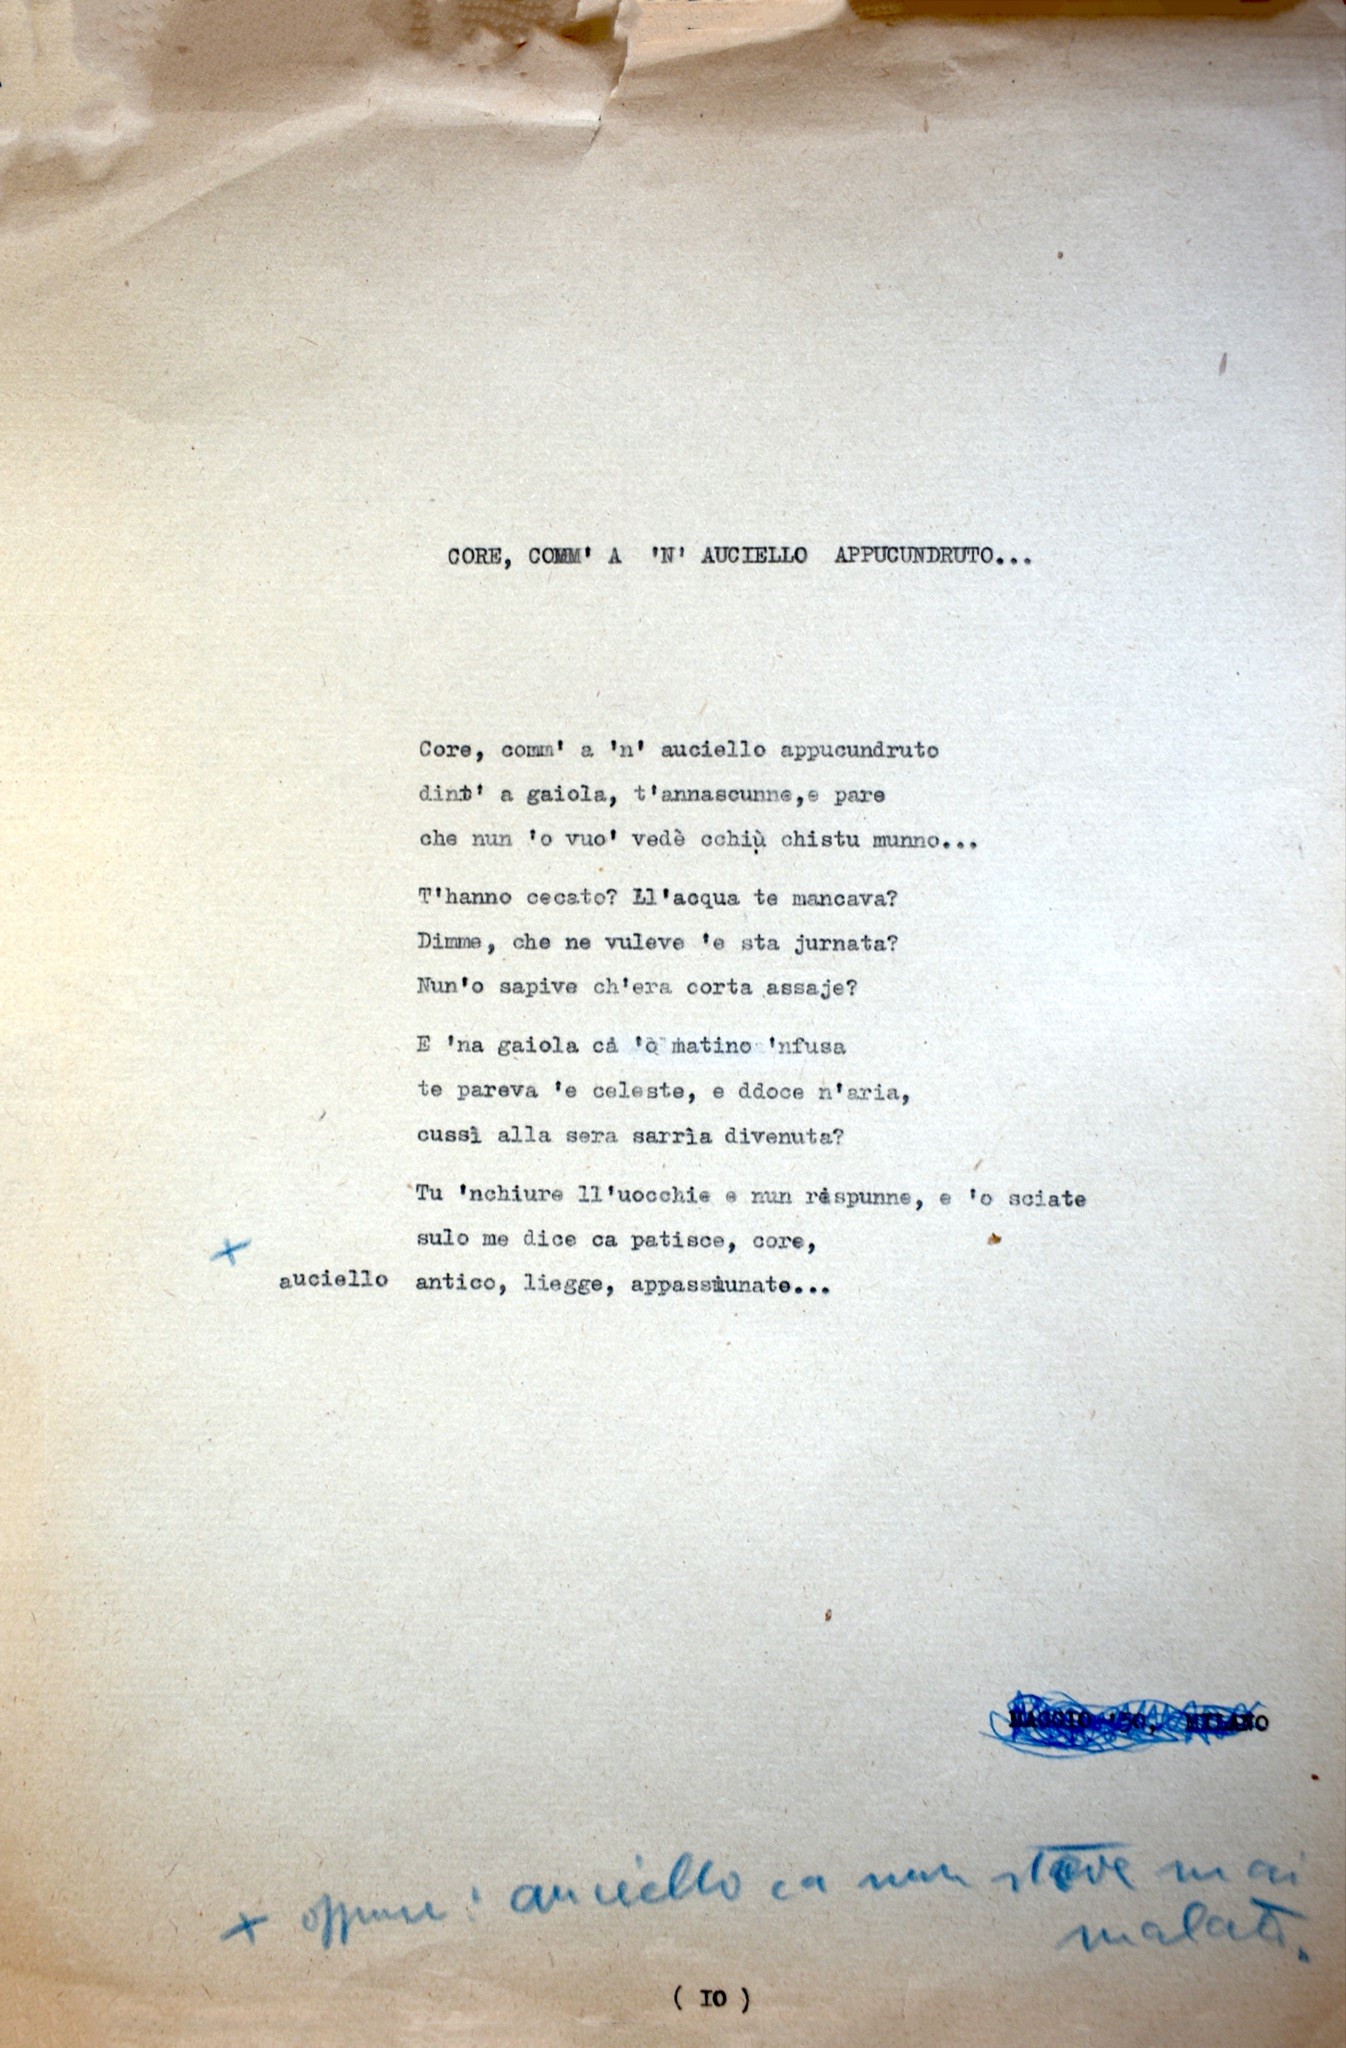 Riproduzione del dattiloscritto della poesia Core, comm' 'a 'n auciello appucundruto...,  Archivio di Stato di Napoli